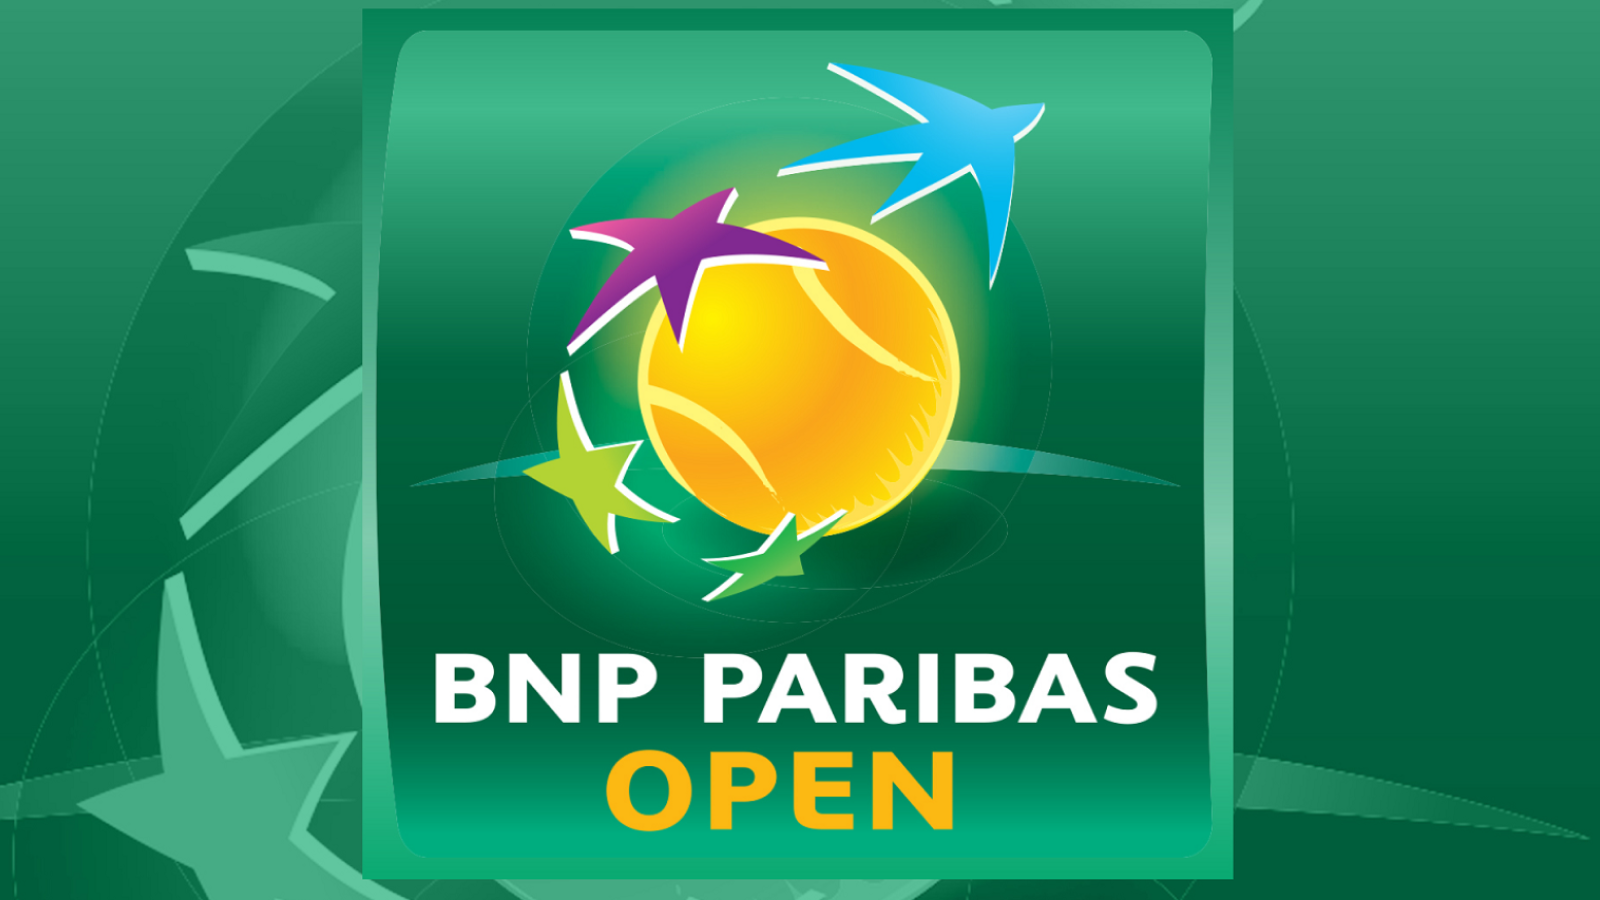 How to Watch BNP Paribas Open 2020 Online